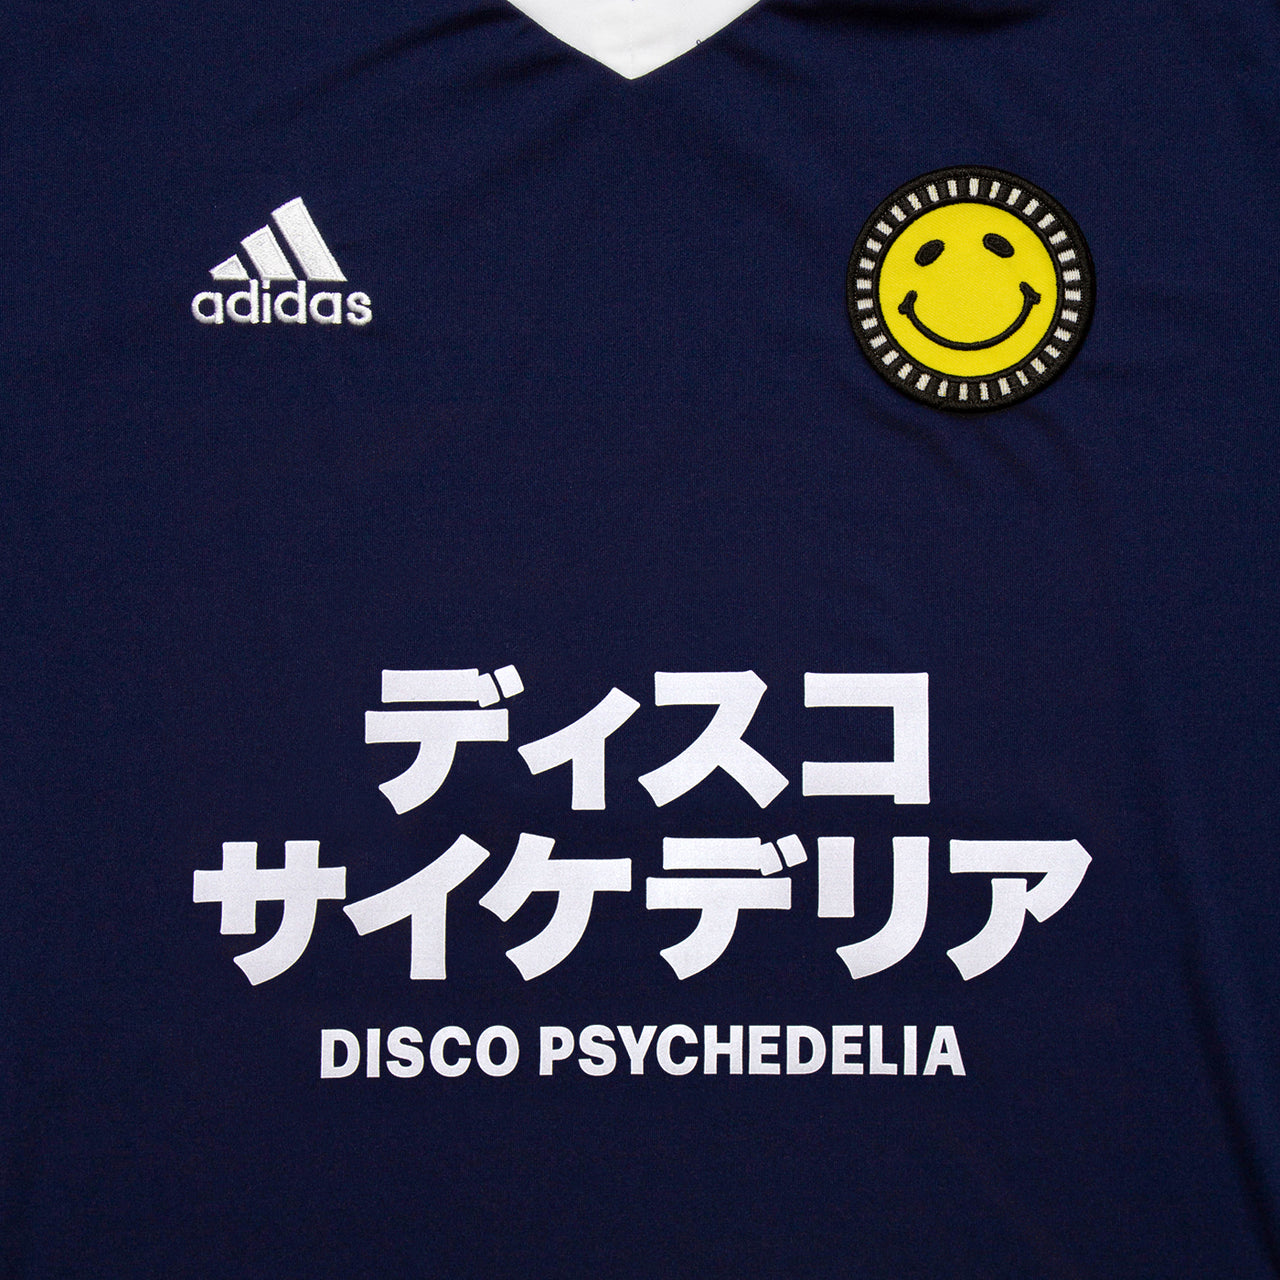 Disco Psychedelia FC Entrada 22 - Training Jersey - Navy Smiley